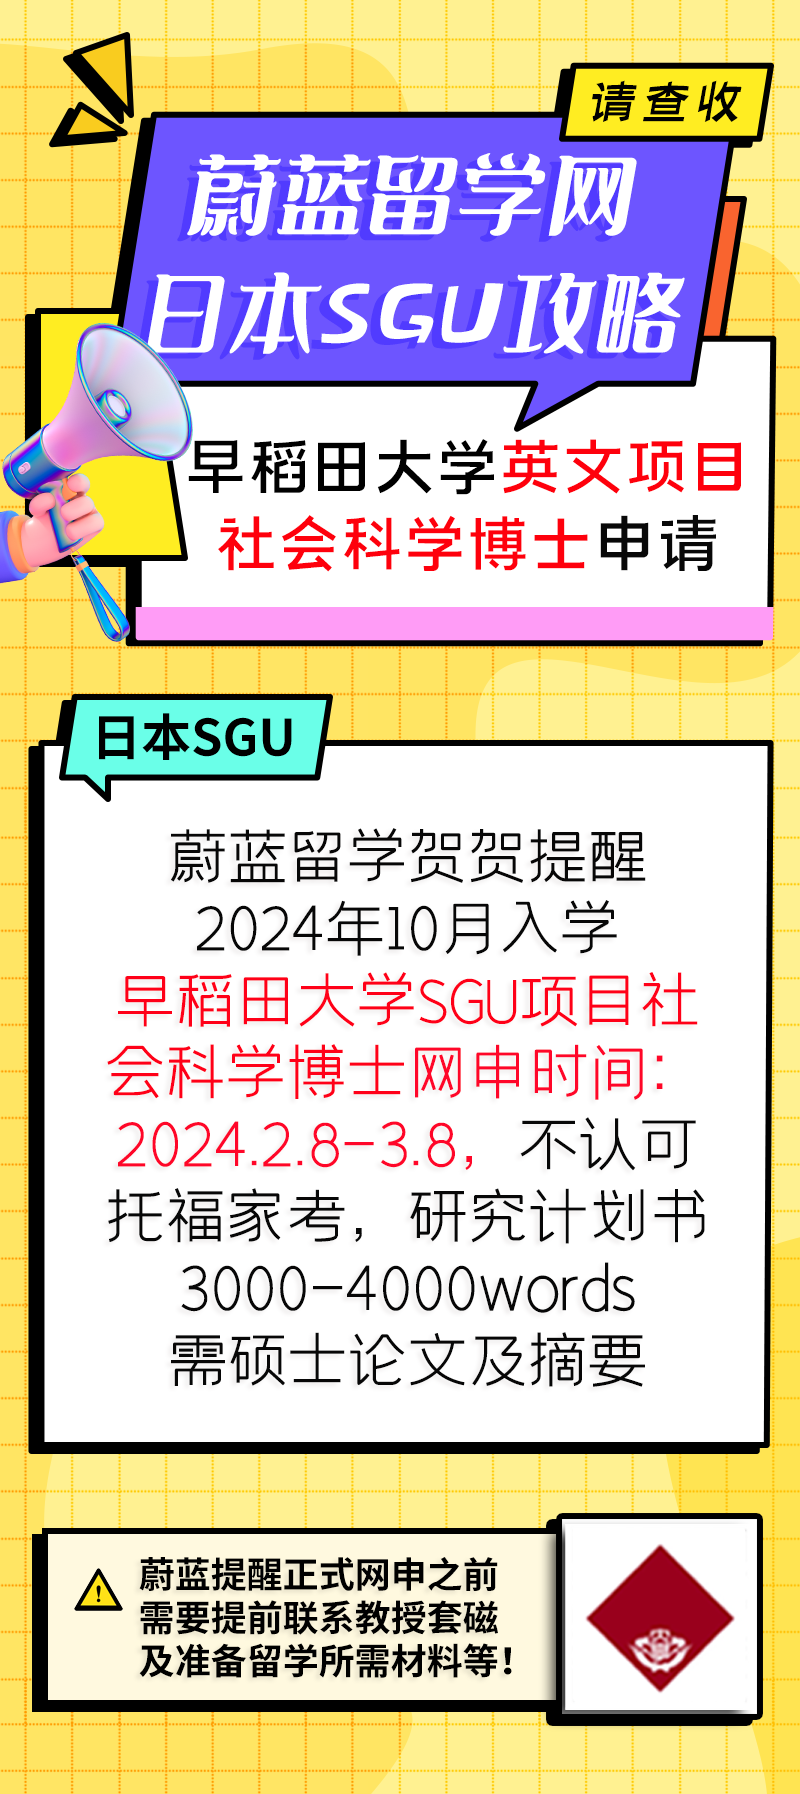 早稻田大学SGU项目gsss社会科学博士申请条件时间